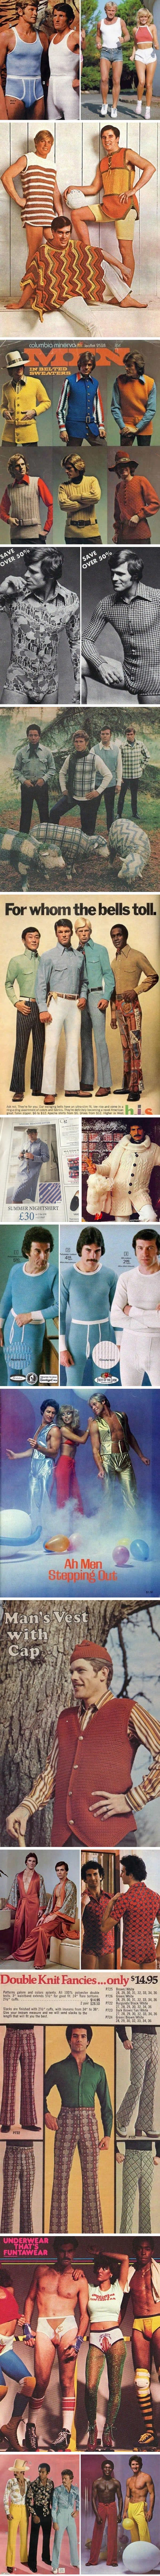 Muška moda sedamdesetih godina nešto je što će vas začuditi i nasmijati